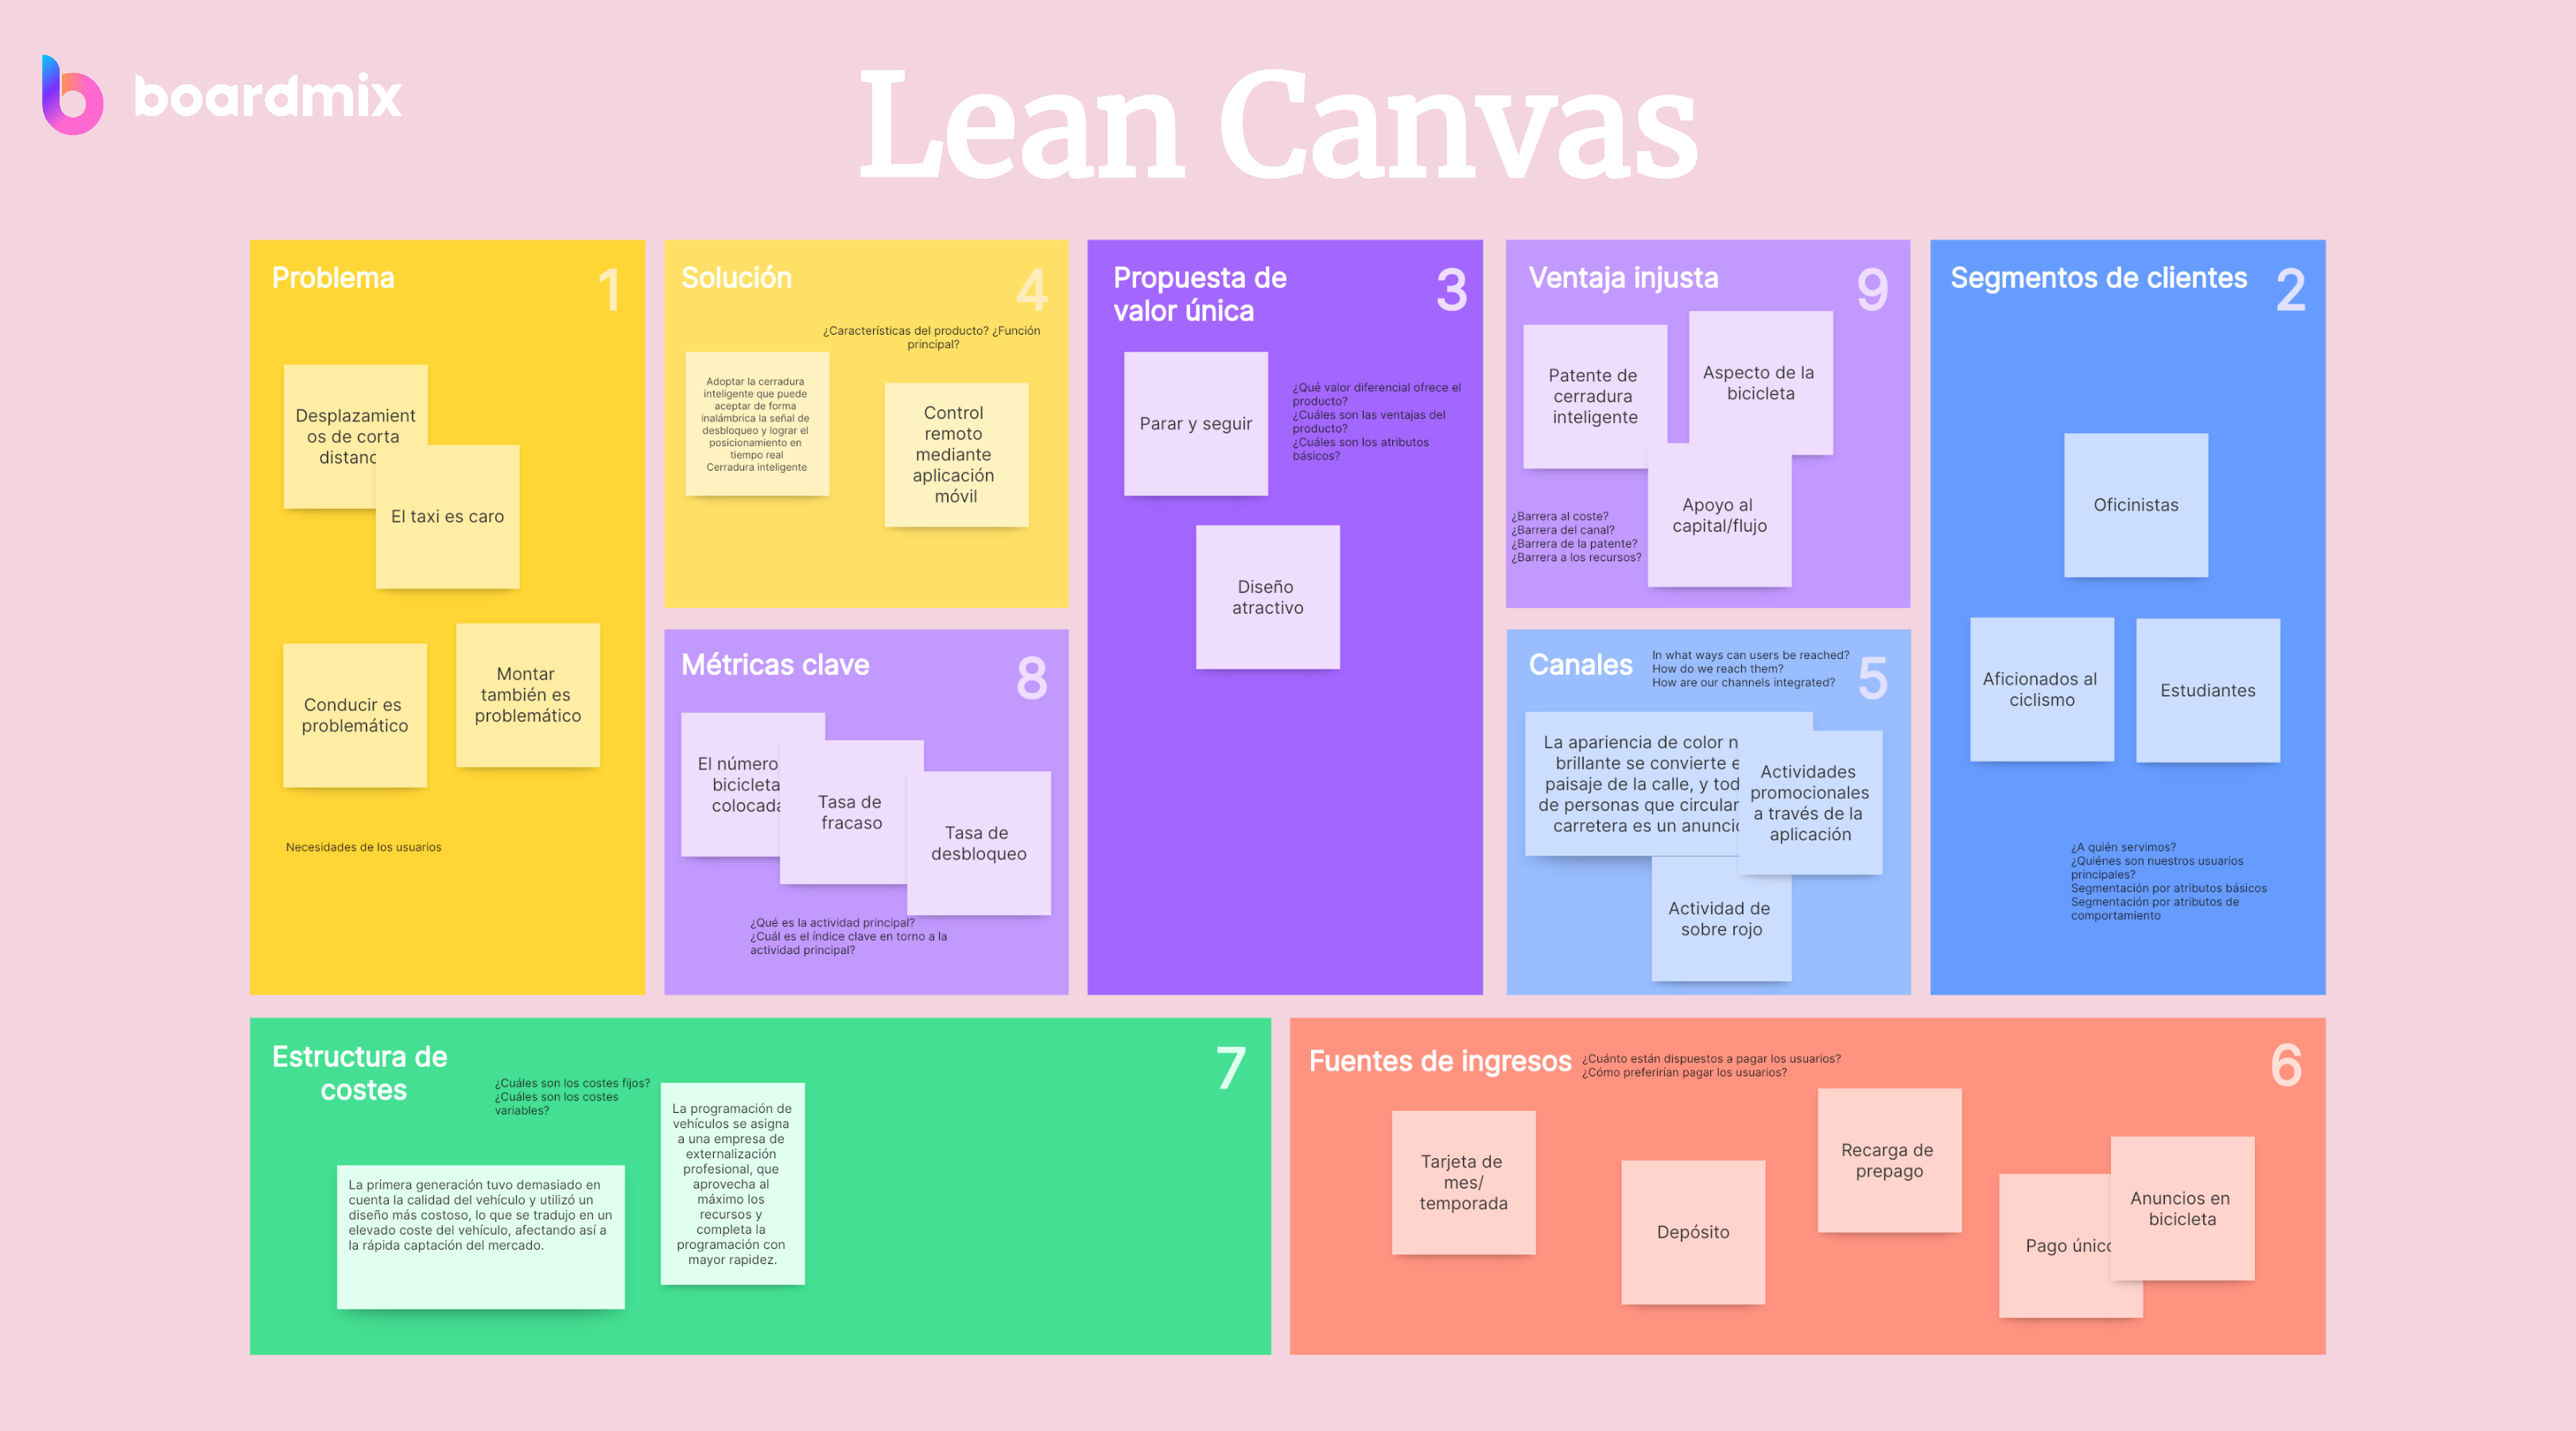 Descubra qué es Lean Canvas: Una guía definitiva